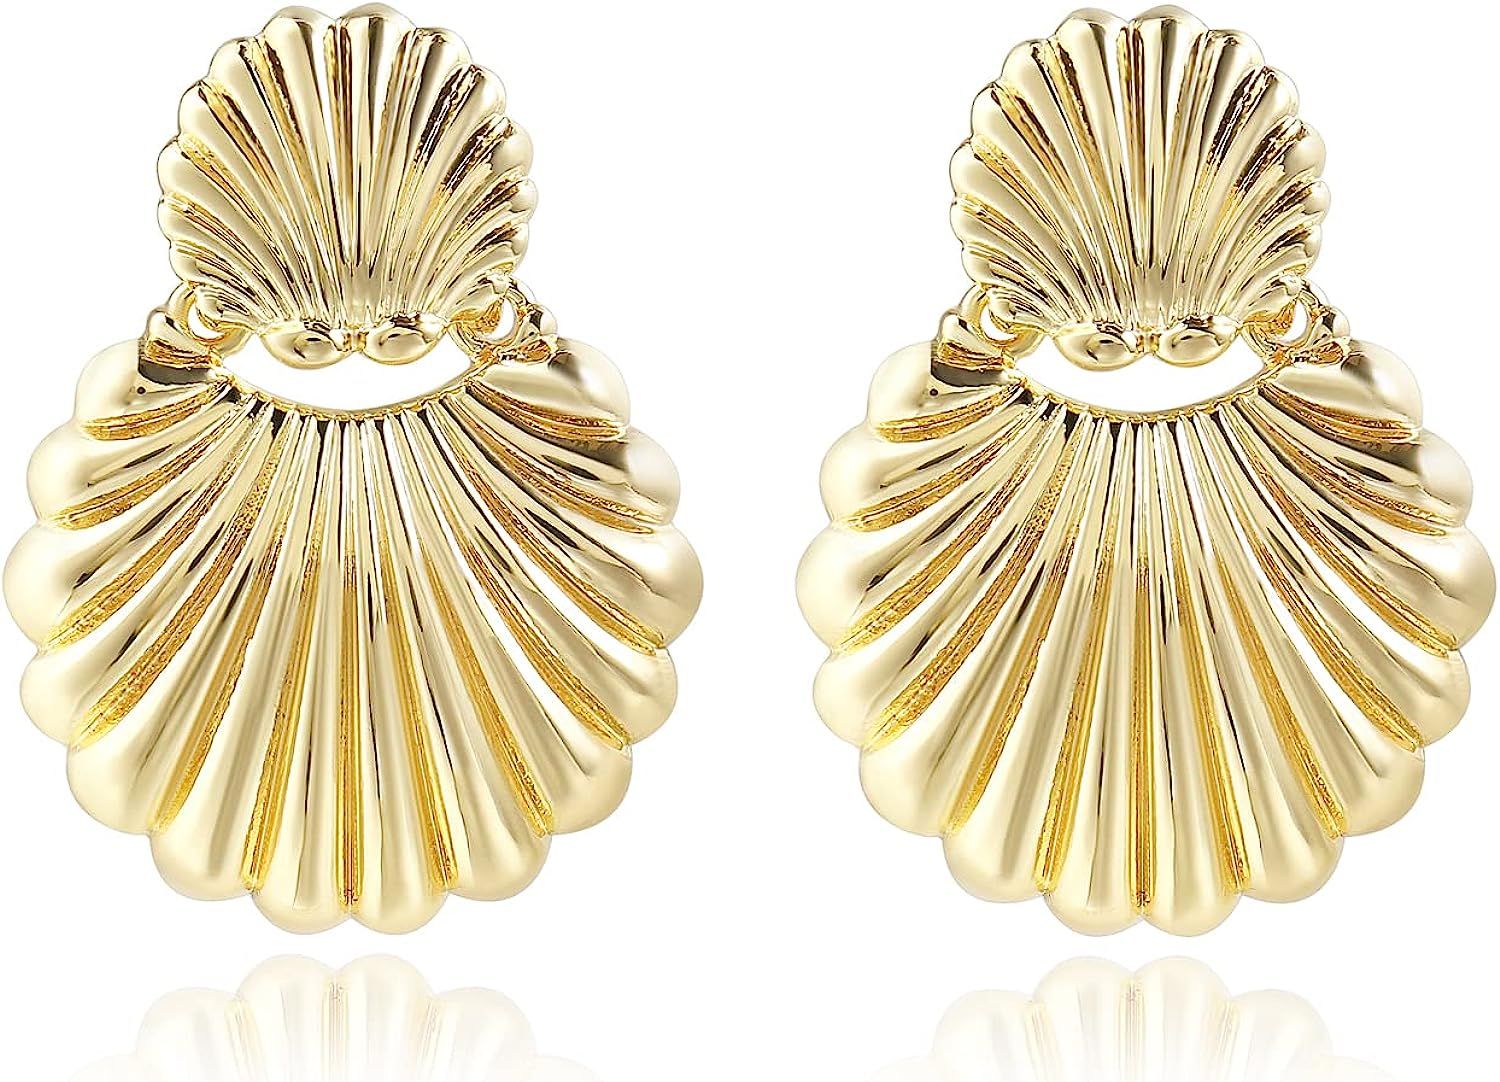 Gold Dangle Earrings Statement 14K Gold Plated Drop Earrings For Women | Amazon (US)